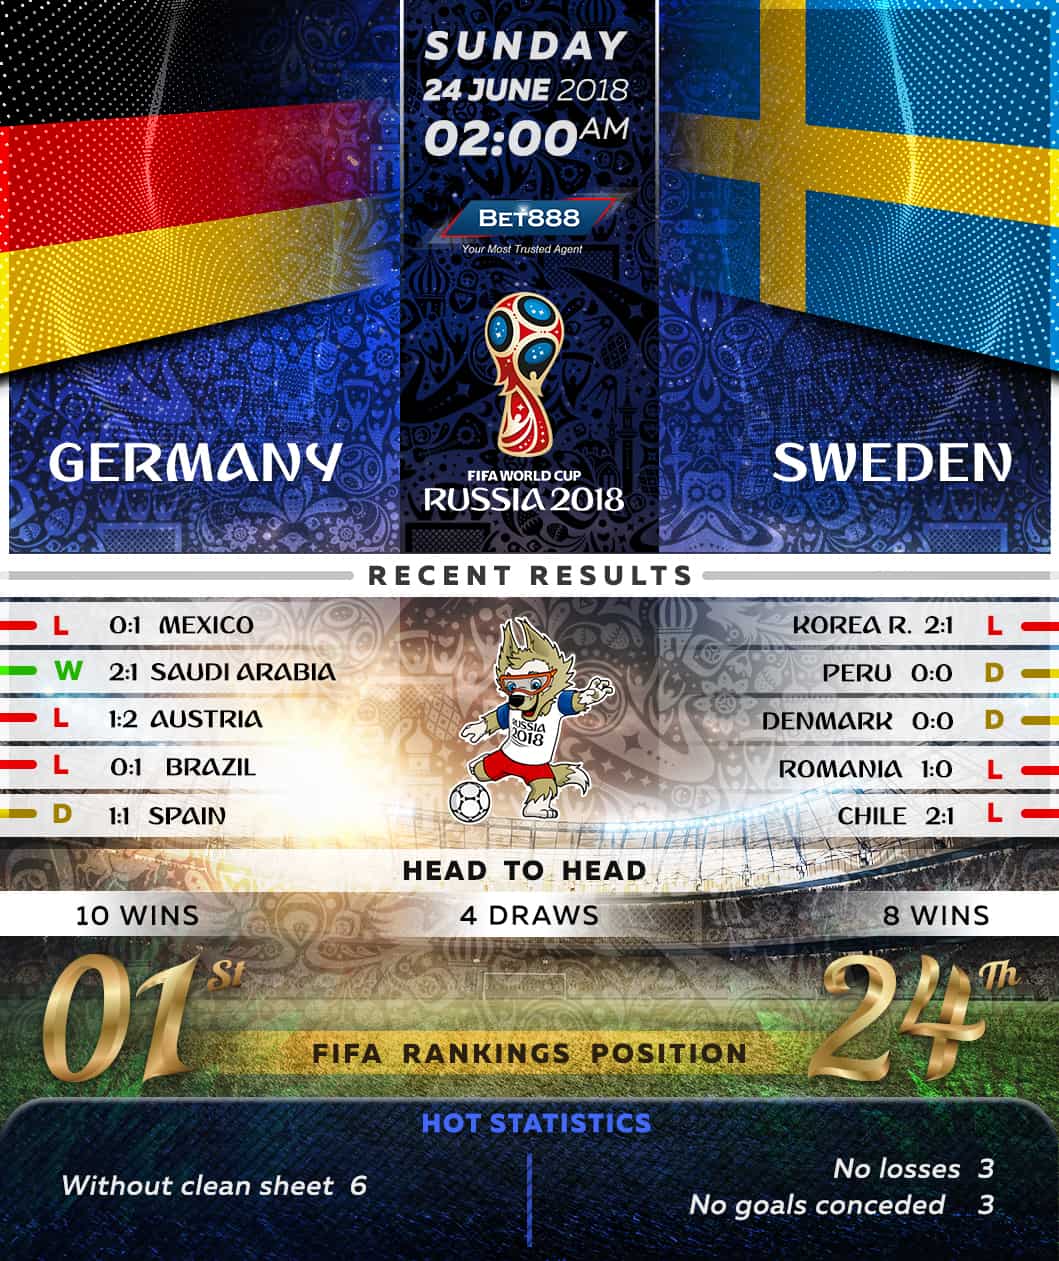 Germany vs Sweden 24/06/18